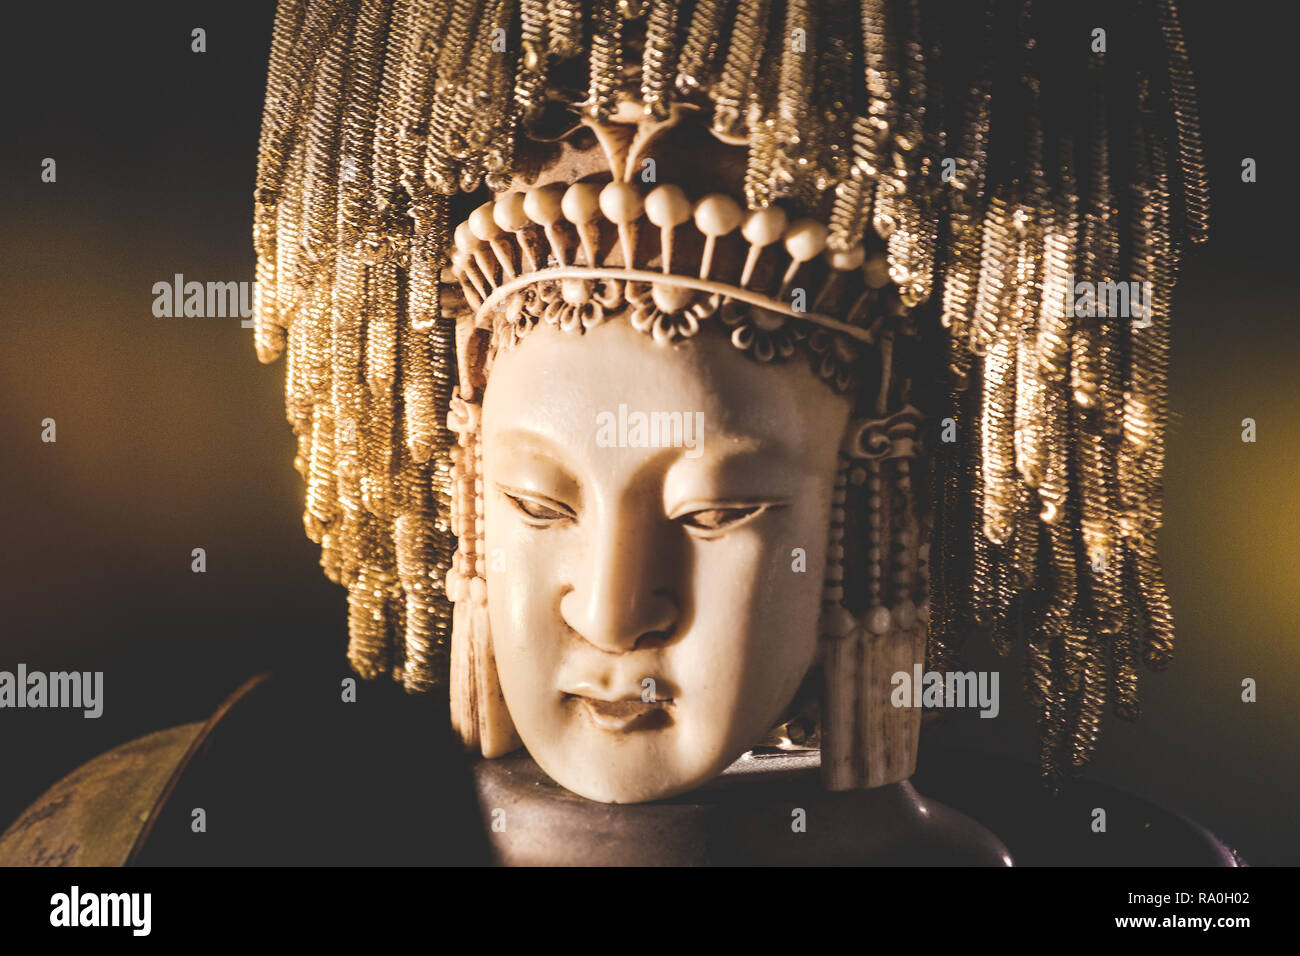 Bouddha statue indienne femelle tête portrait background Banque D'Images